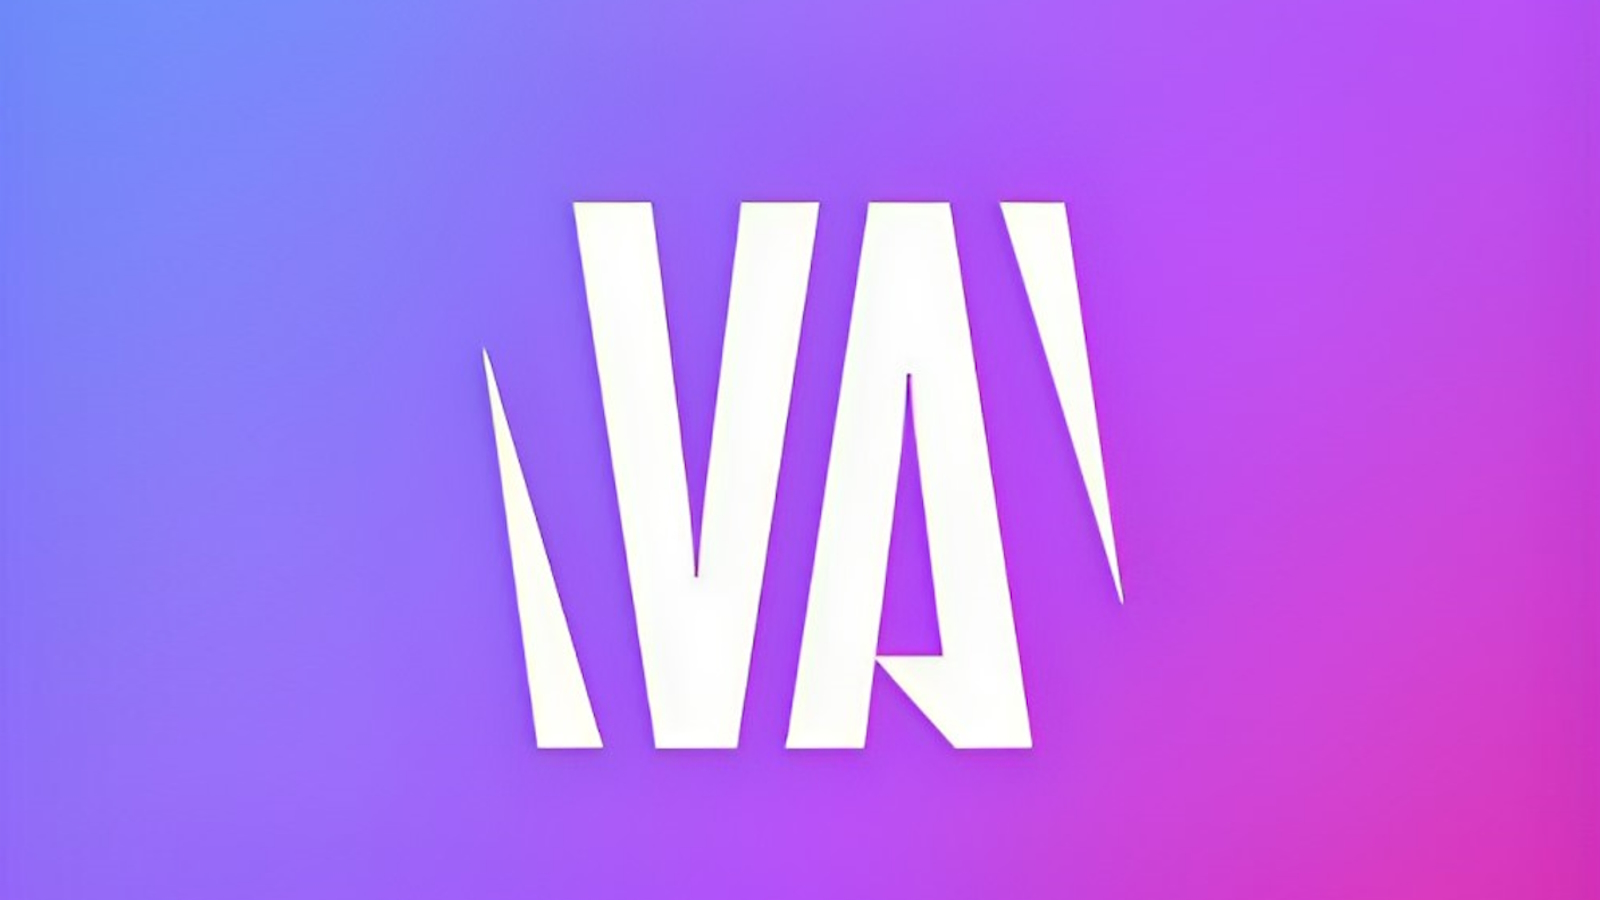 VTubers Everywhere as Streamer Awards 2023 Shortlist Revealed, Voting Opens